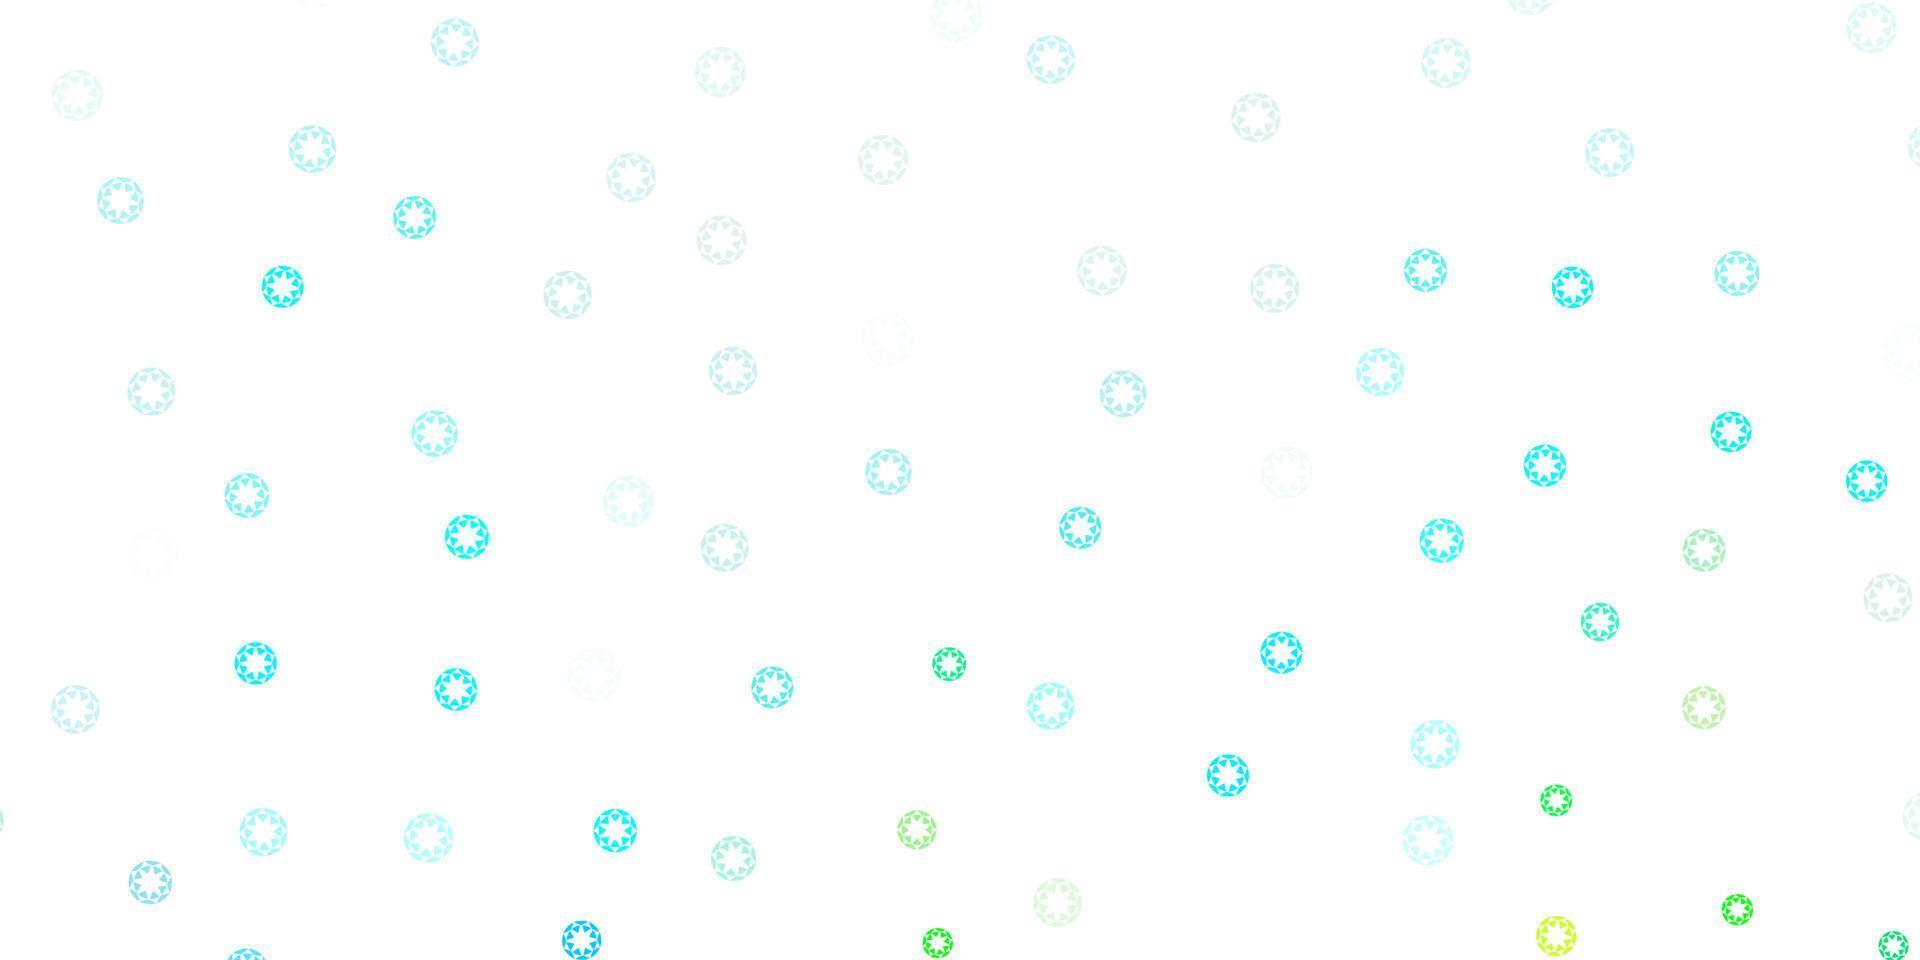 fundo vector azul e verde claro com bolhas.